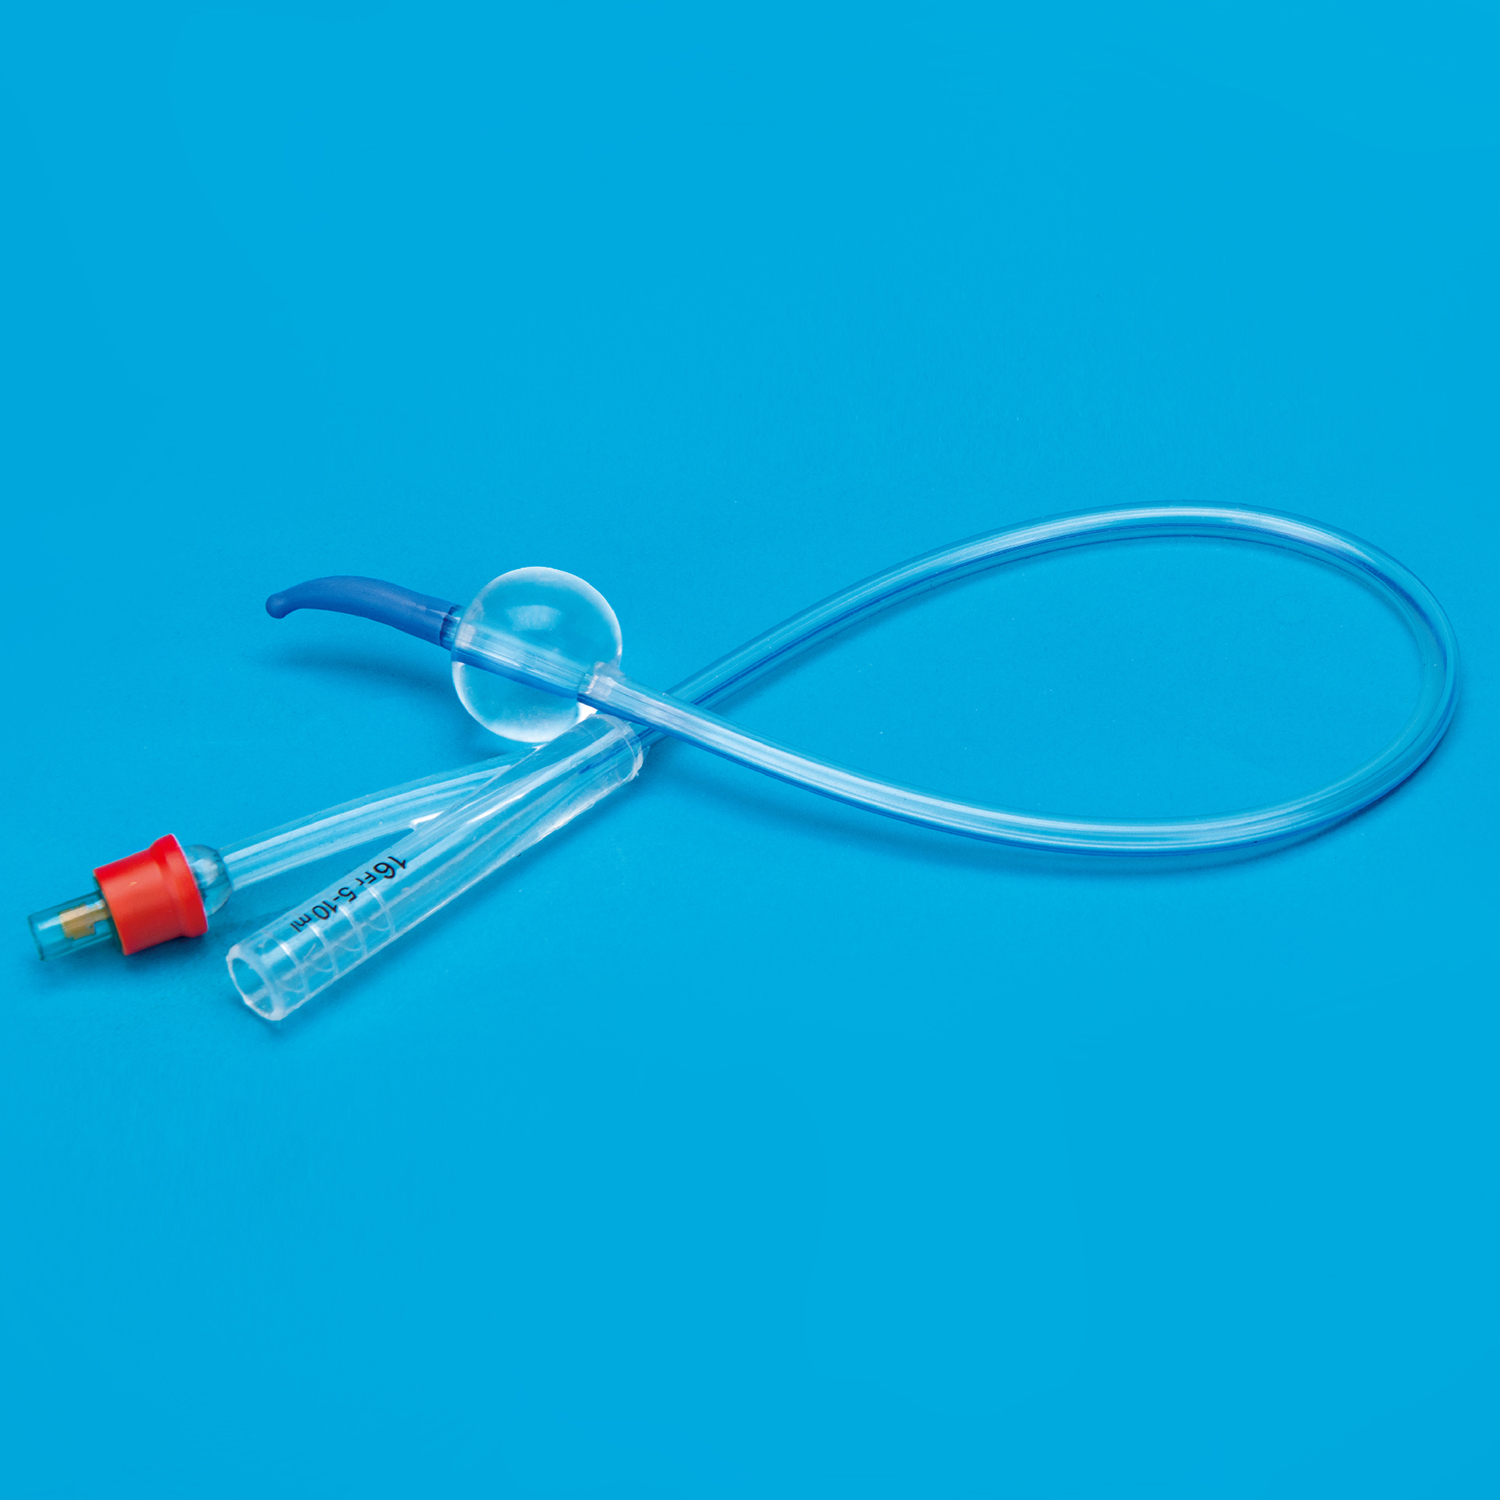 2 វិធីរបស់ប្រទេសចិន Tiemann Coude Tip ទាំងអស់ Silicone Urinary Catheter Balloon Producer